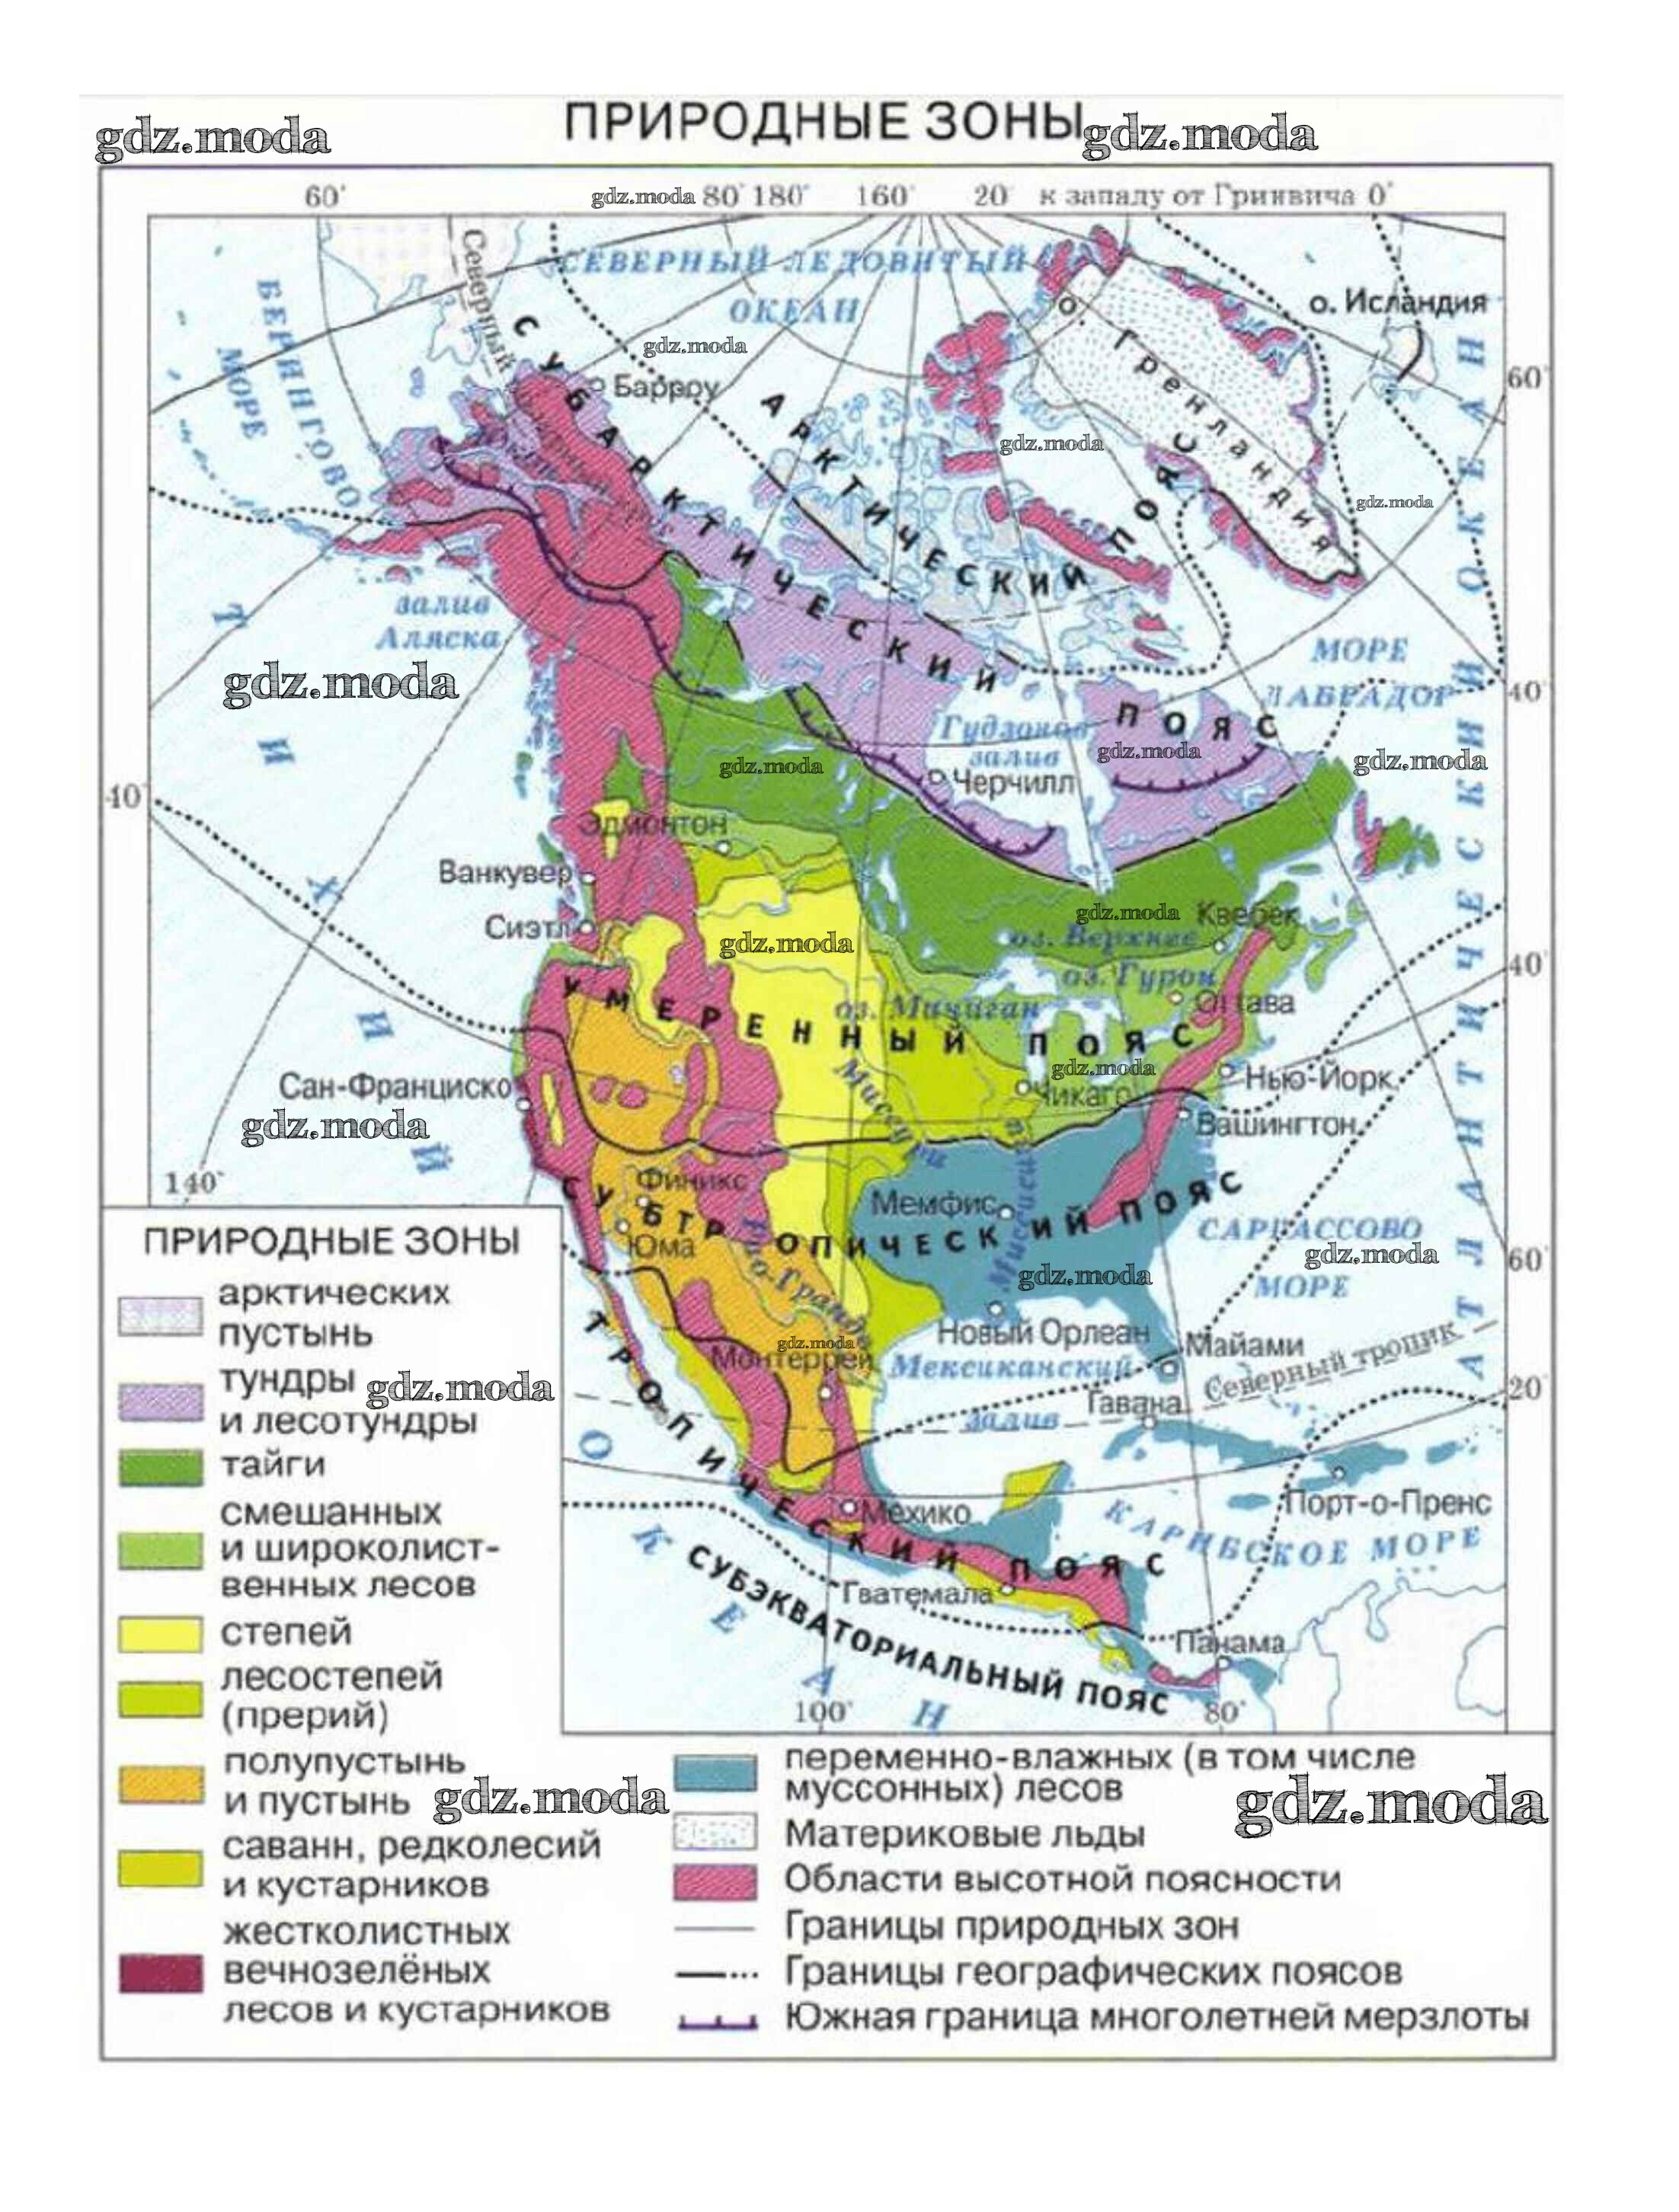 Какой пояс занимает большую часть северной америки. Физическая карта Северной Америки природные зоны. Карта природных зон Северной Америки 7 класс география. Карта природные зоны Северной Америки карта. Природные зоны Северной Америки 7 класс атлас.